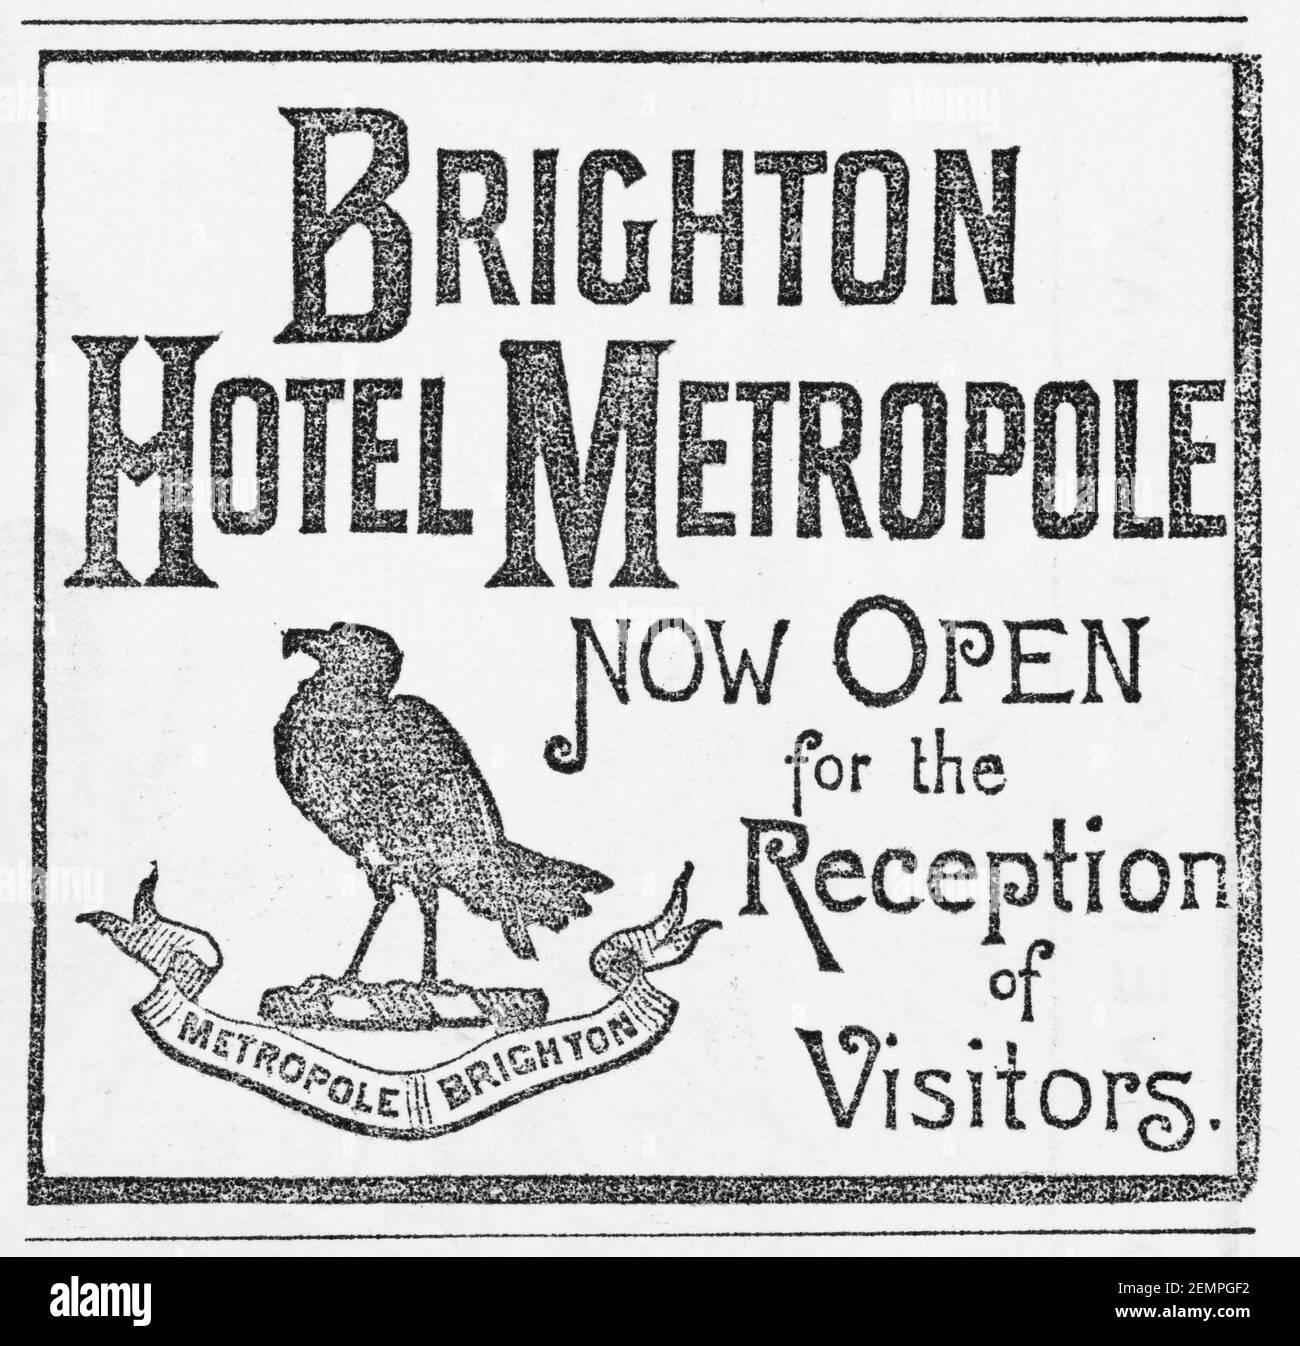 Pubblicità vittoriana per l'Hotel Metropole di Brighton dal 1891 (aperto nel 1990) e ora un hotel Hilton. Storia della pubblicità e del commercio di ospitalità. Foto Stock